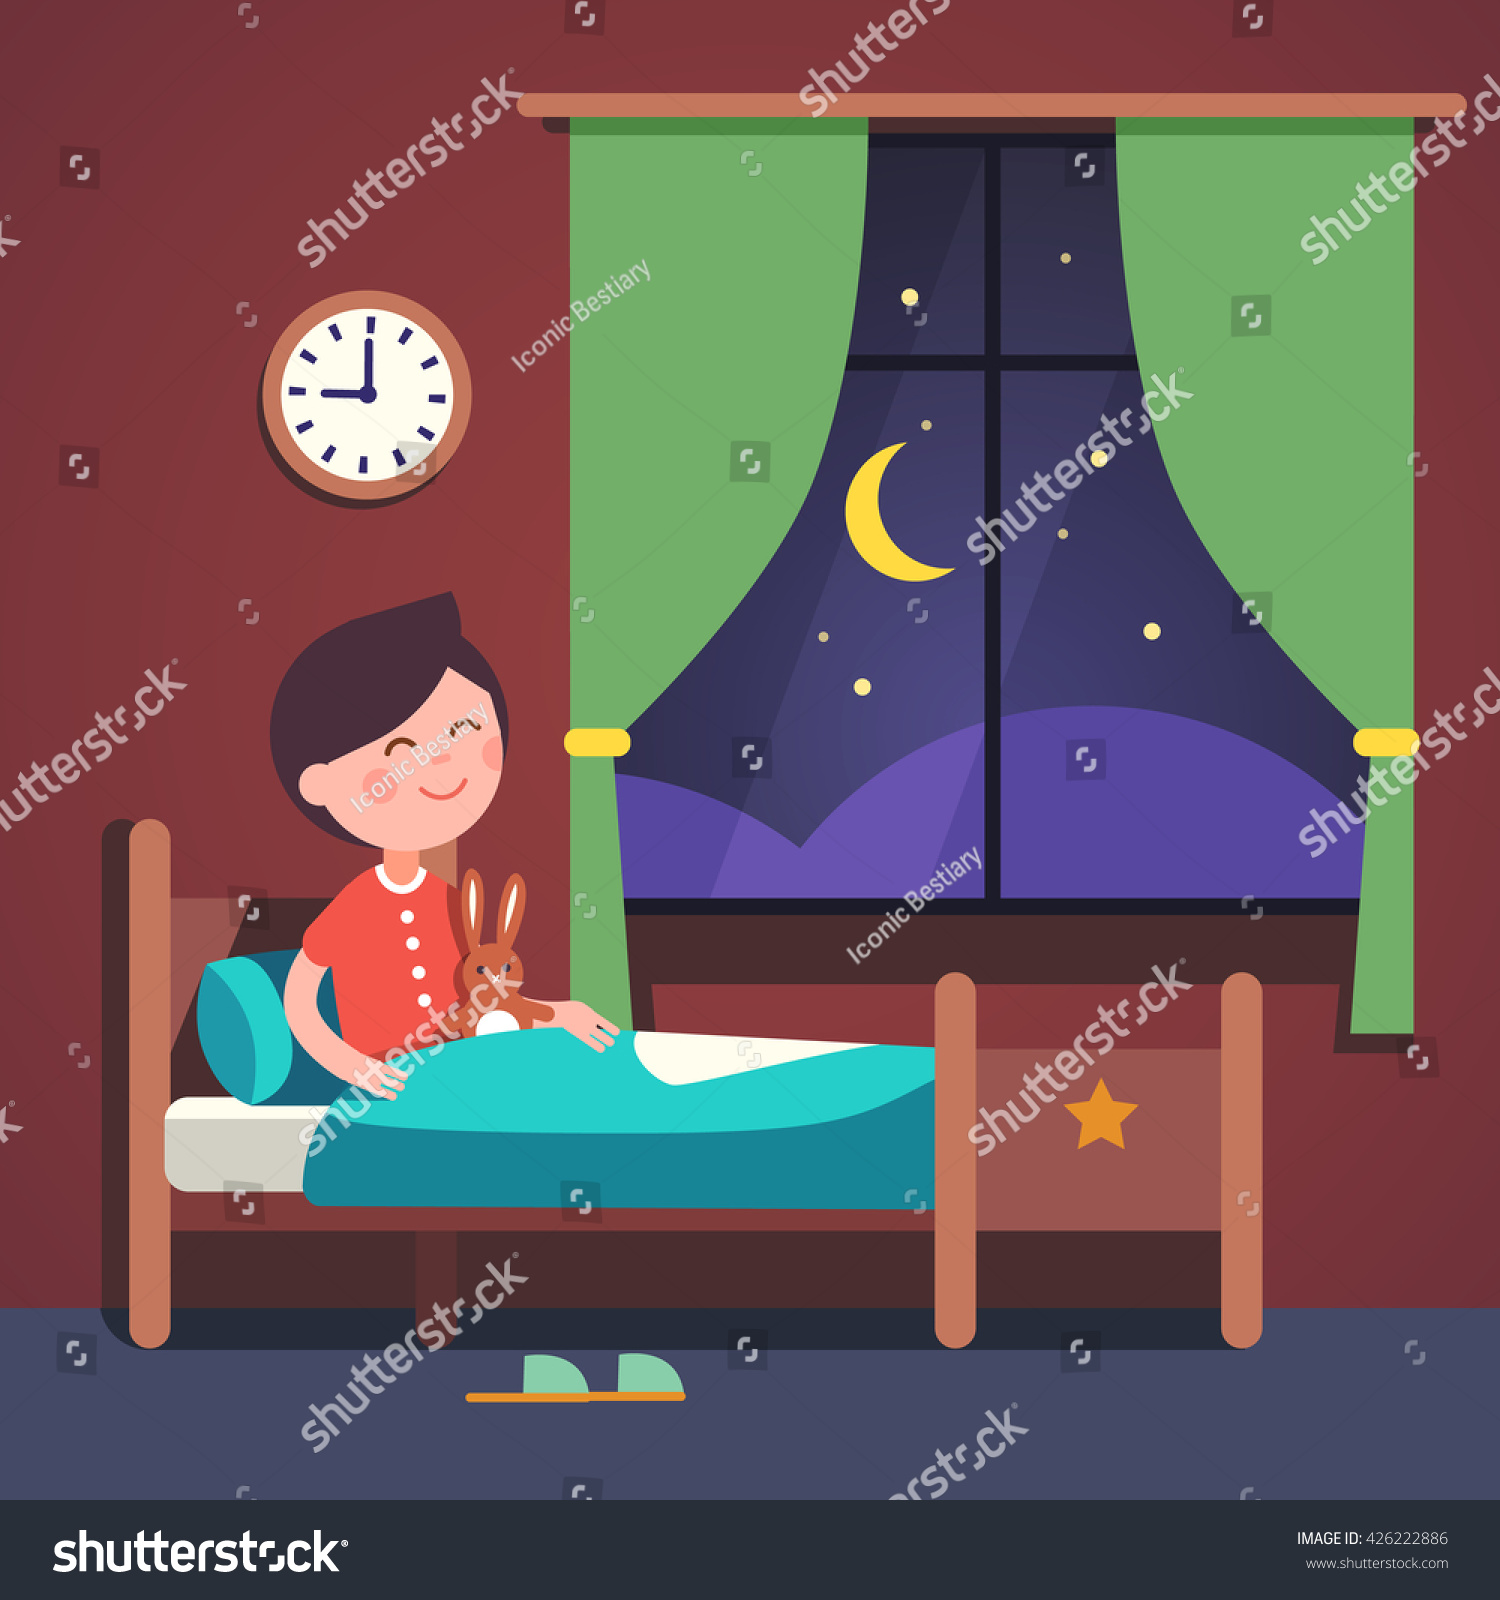 Boy Kid Preparing Sleep Bedtime His Stock Vector Royalty Free